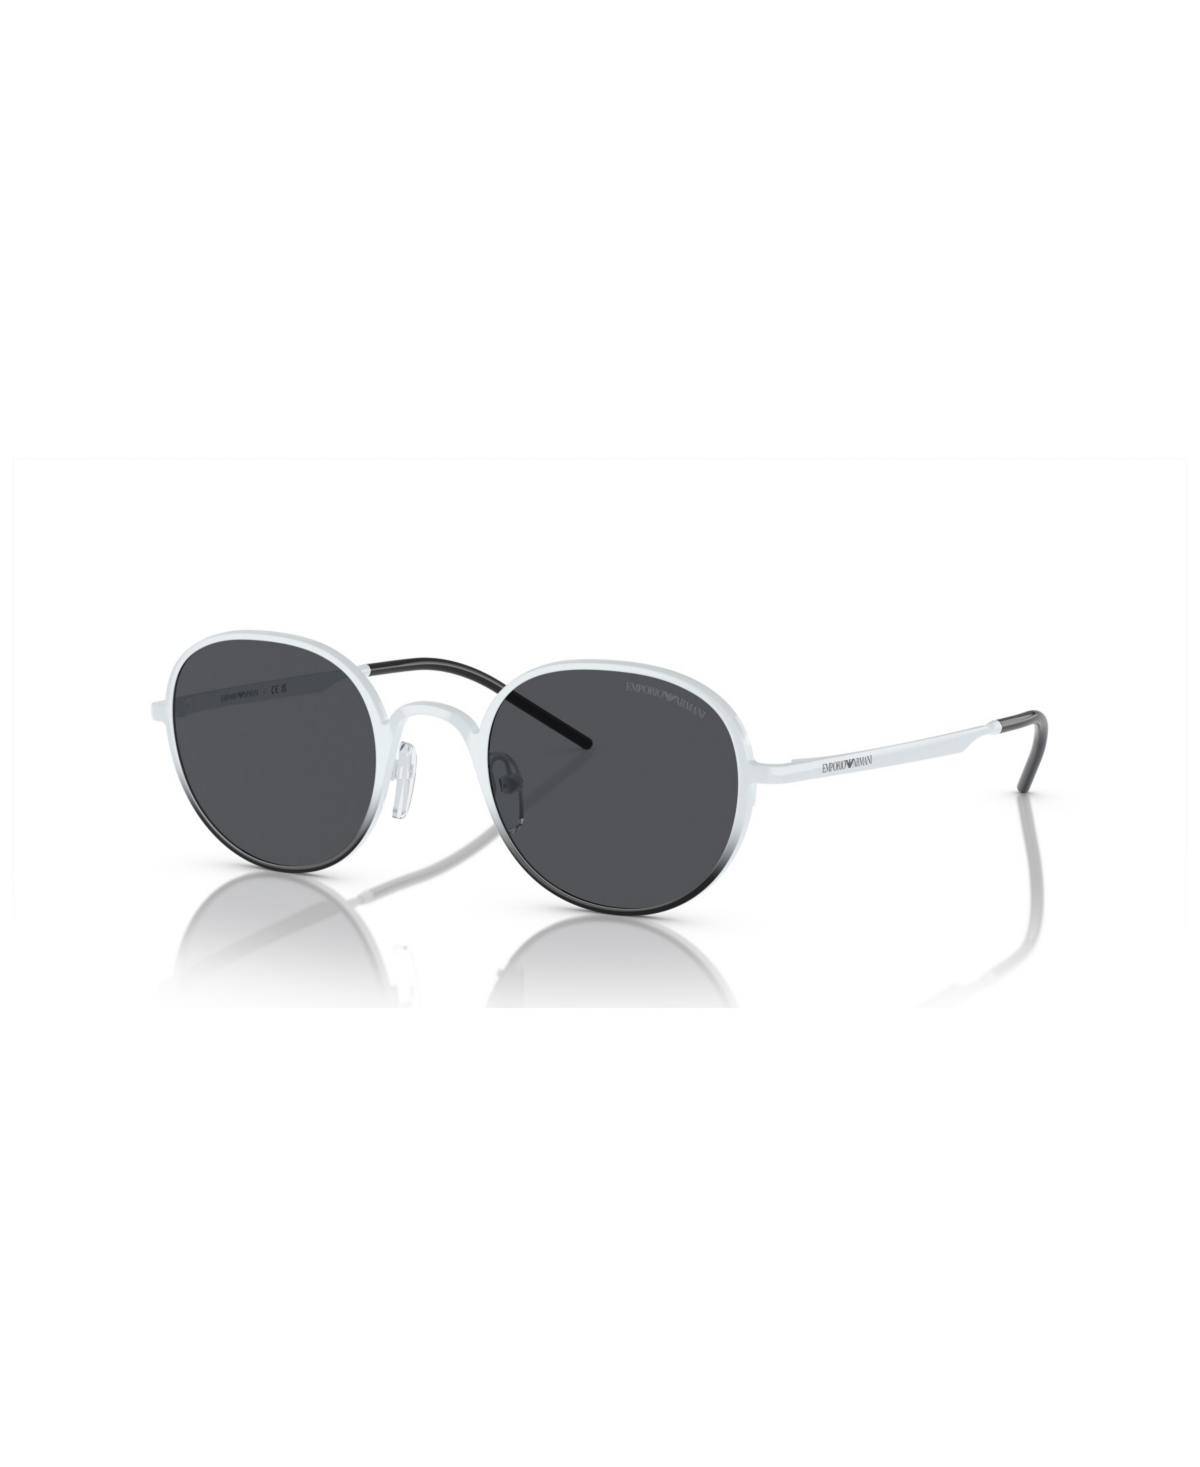 Emporio Armani Women's Sunglasses Ea2151 In Shiny White,black